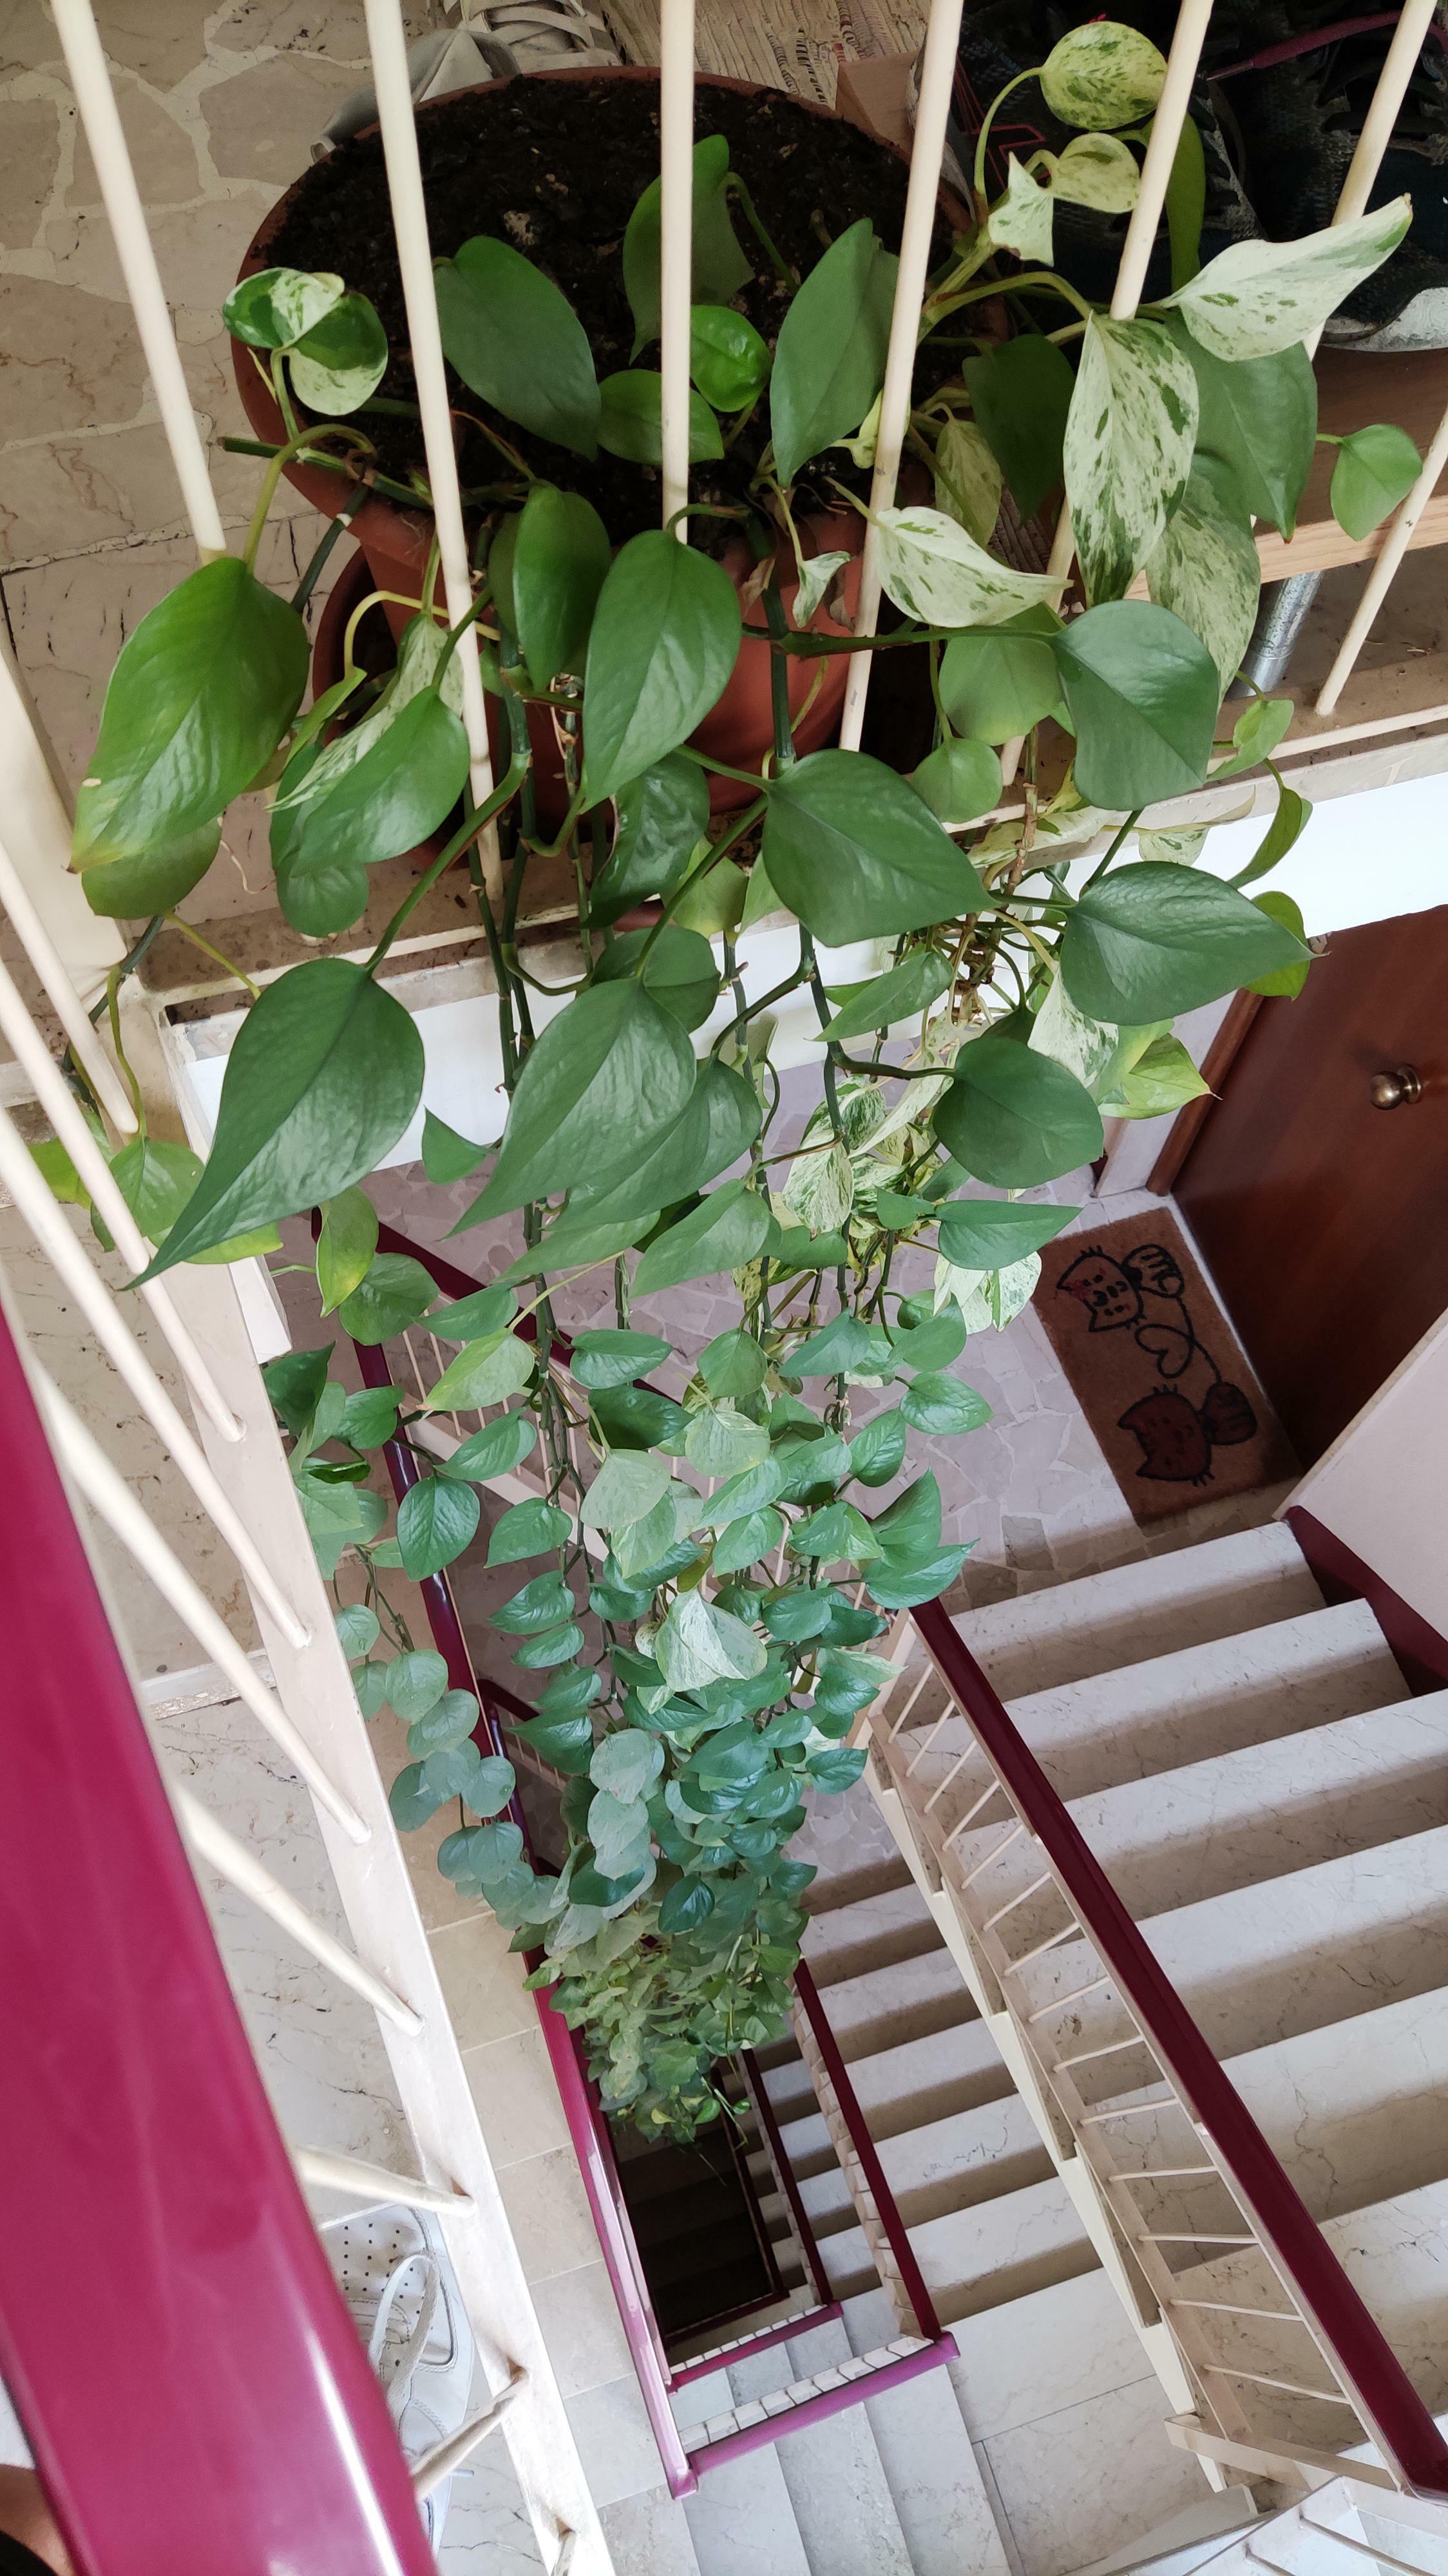 Cette plante extrêmement longue se trouve dans mon appartement. Elle fait 4 étages de long